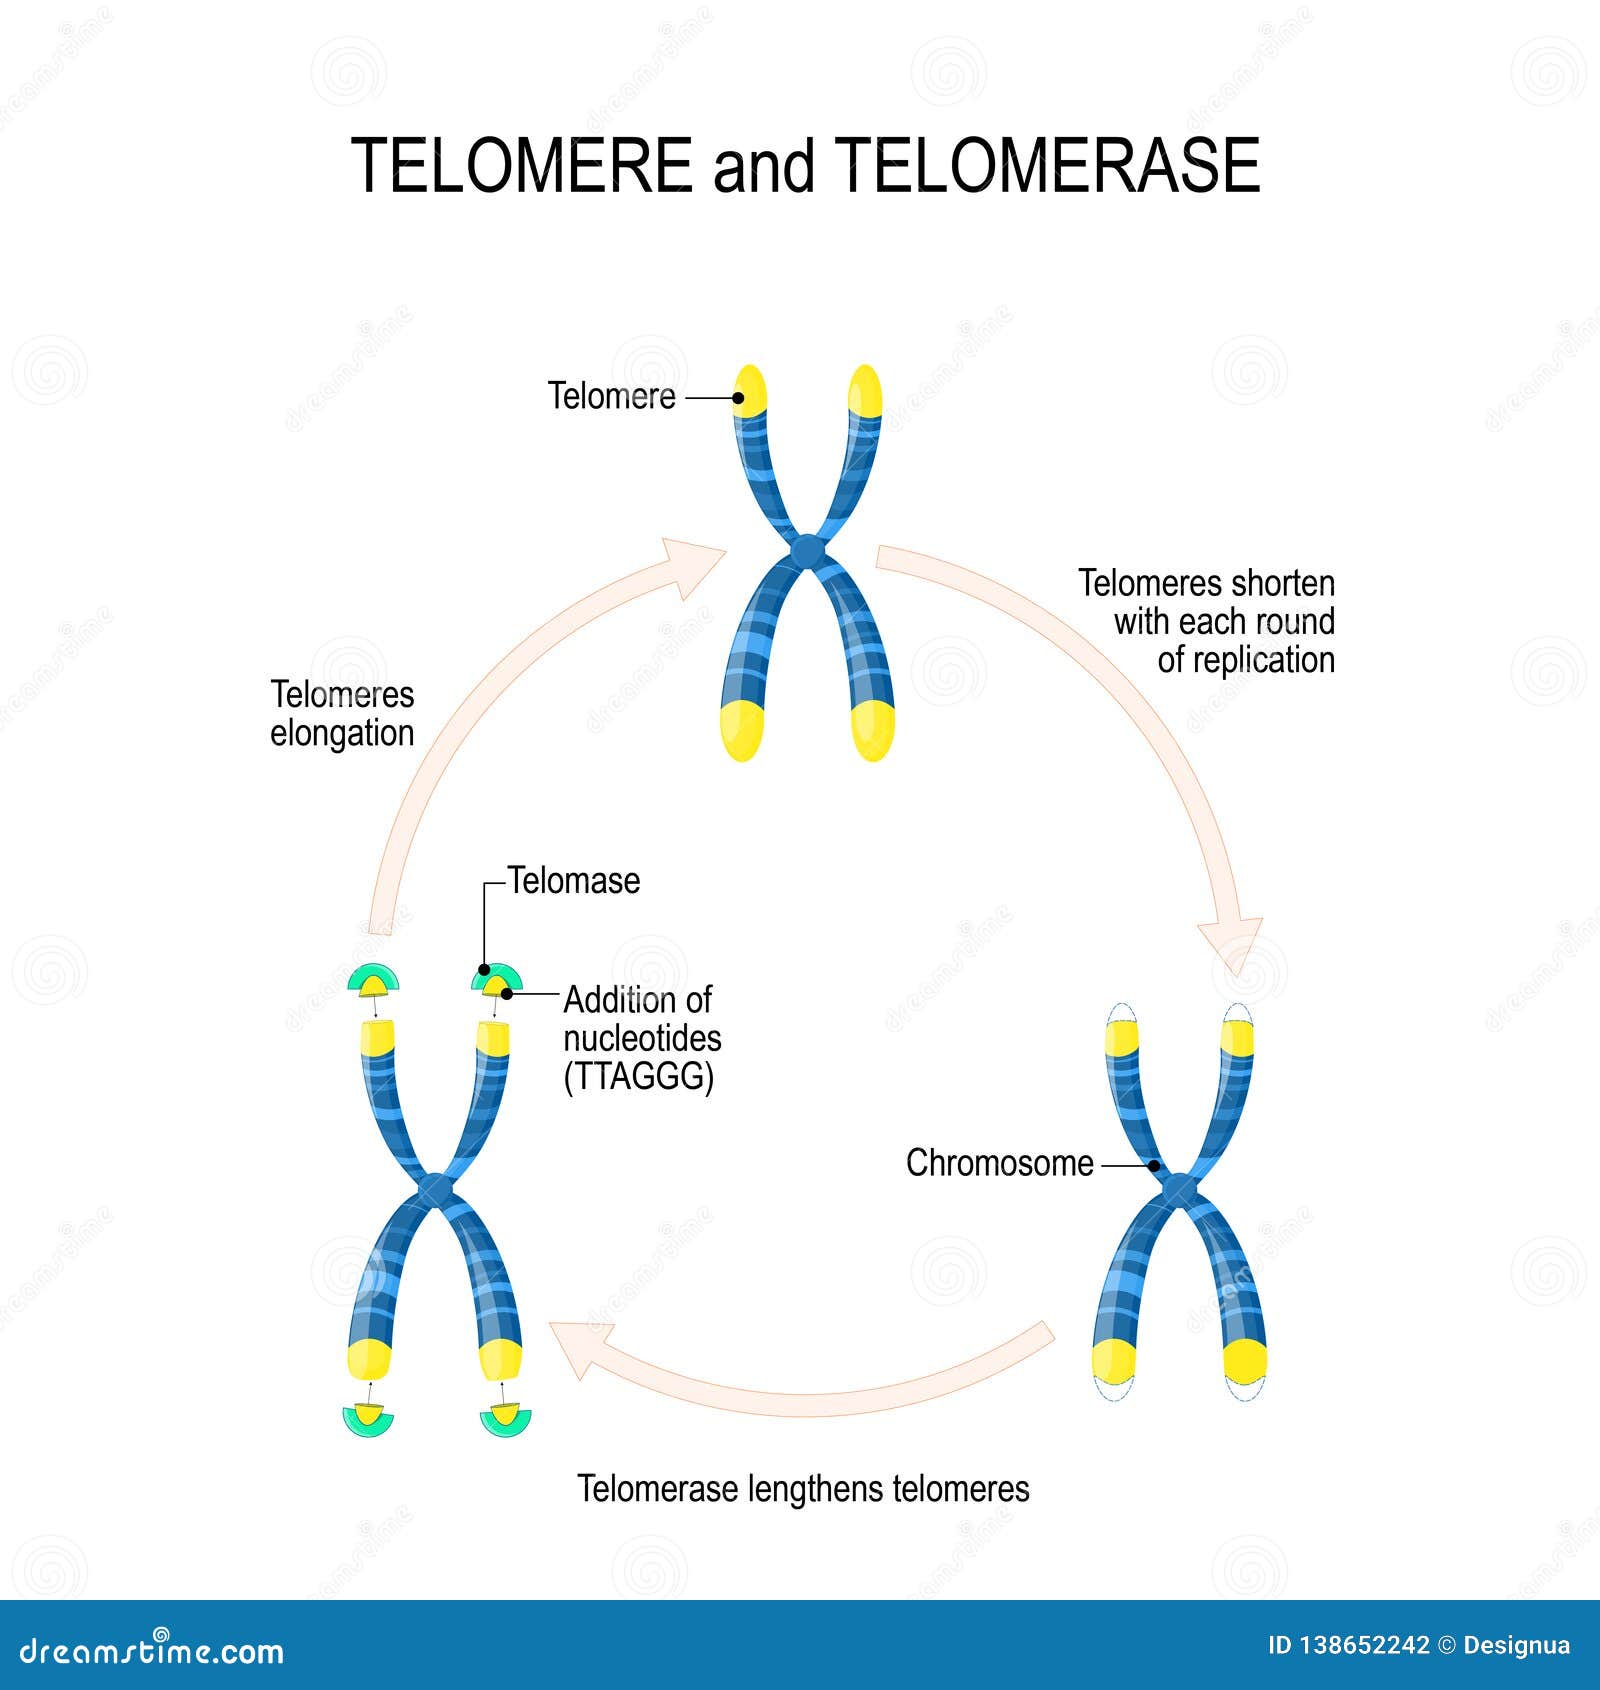 telomere and telomerase. aging process